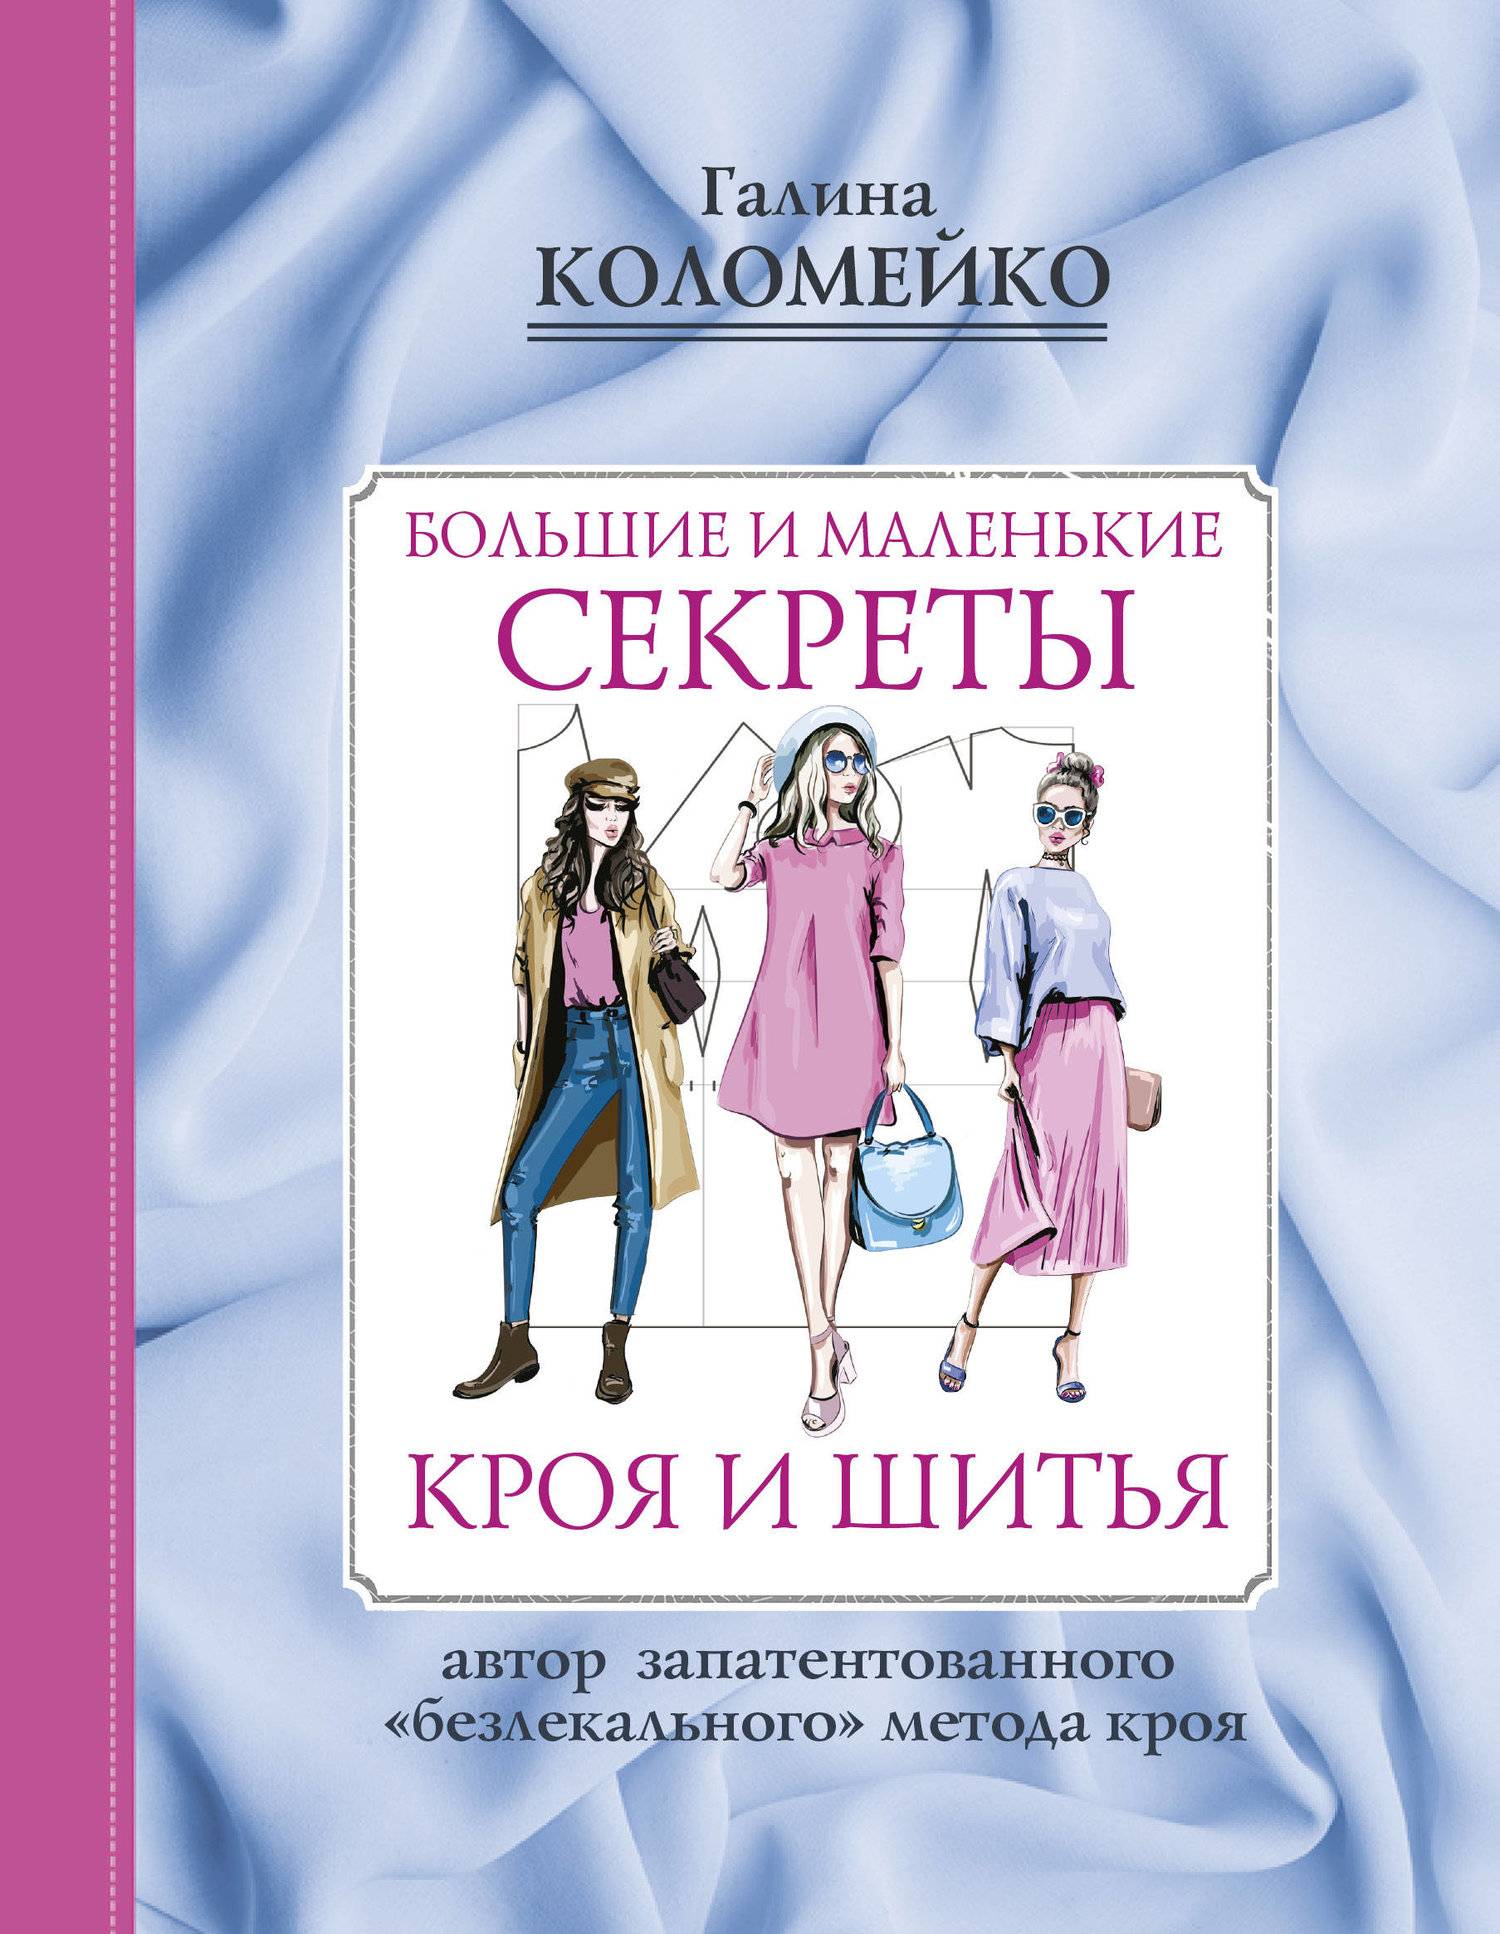 Kniga, Русские книги в Германии, купить книгу (книга), Интернет МАГАЗИН